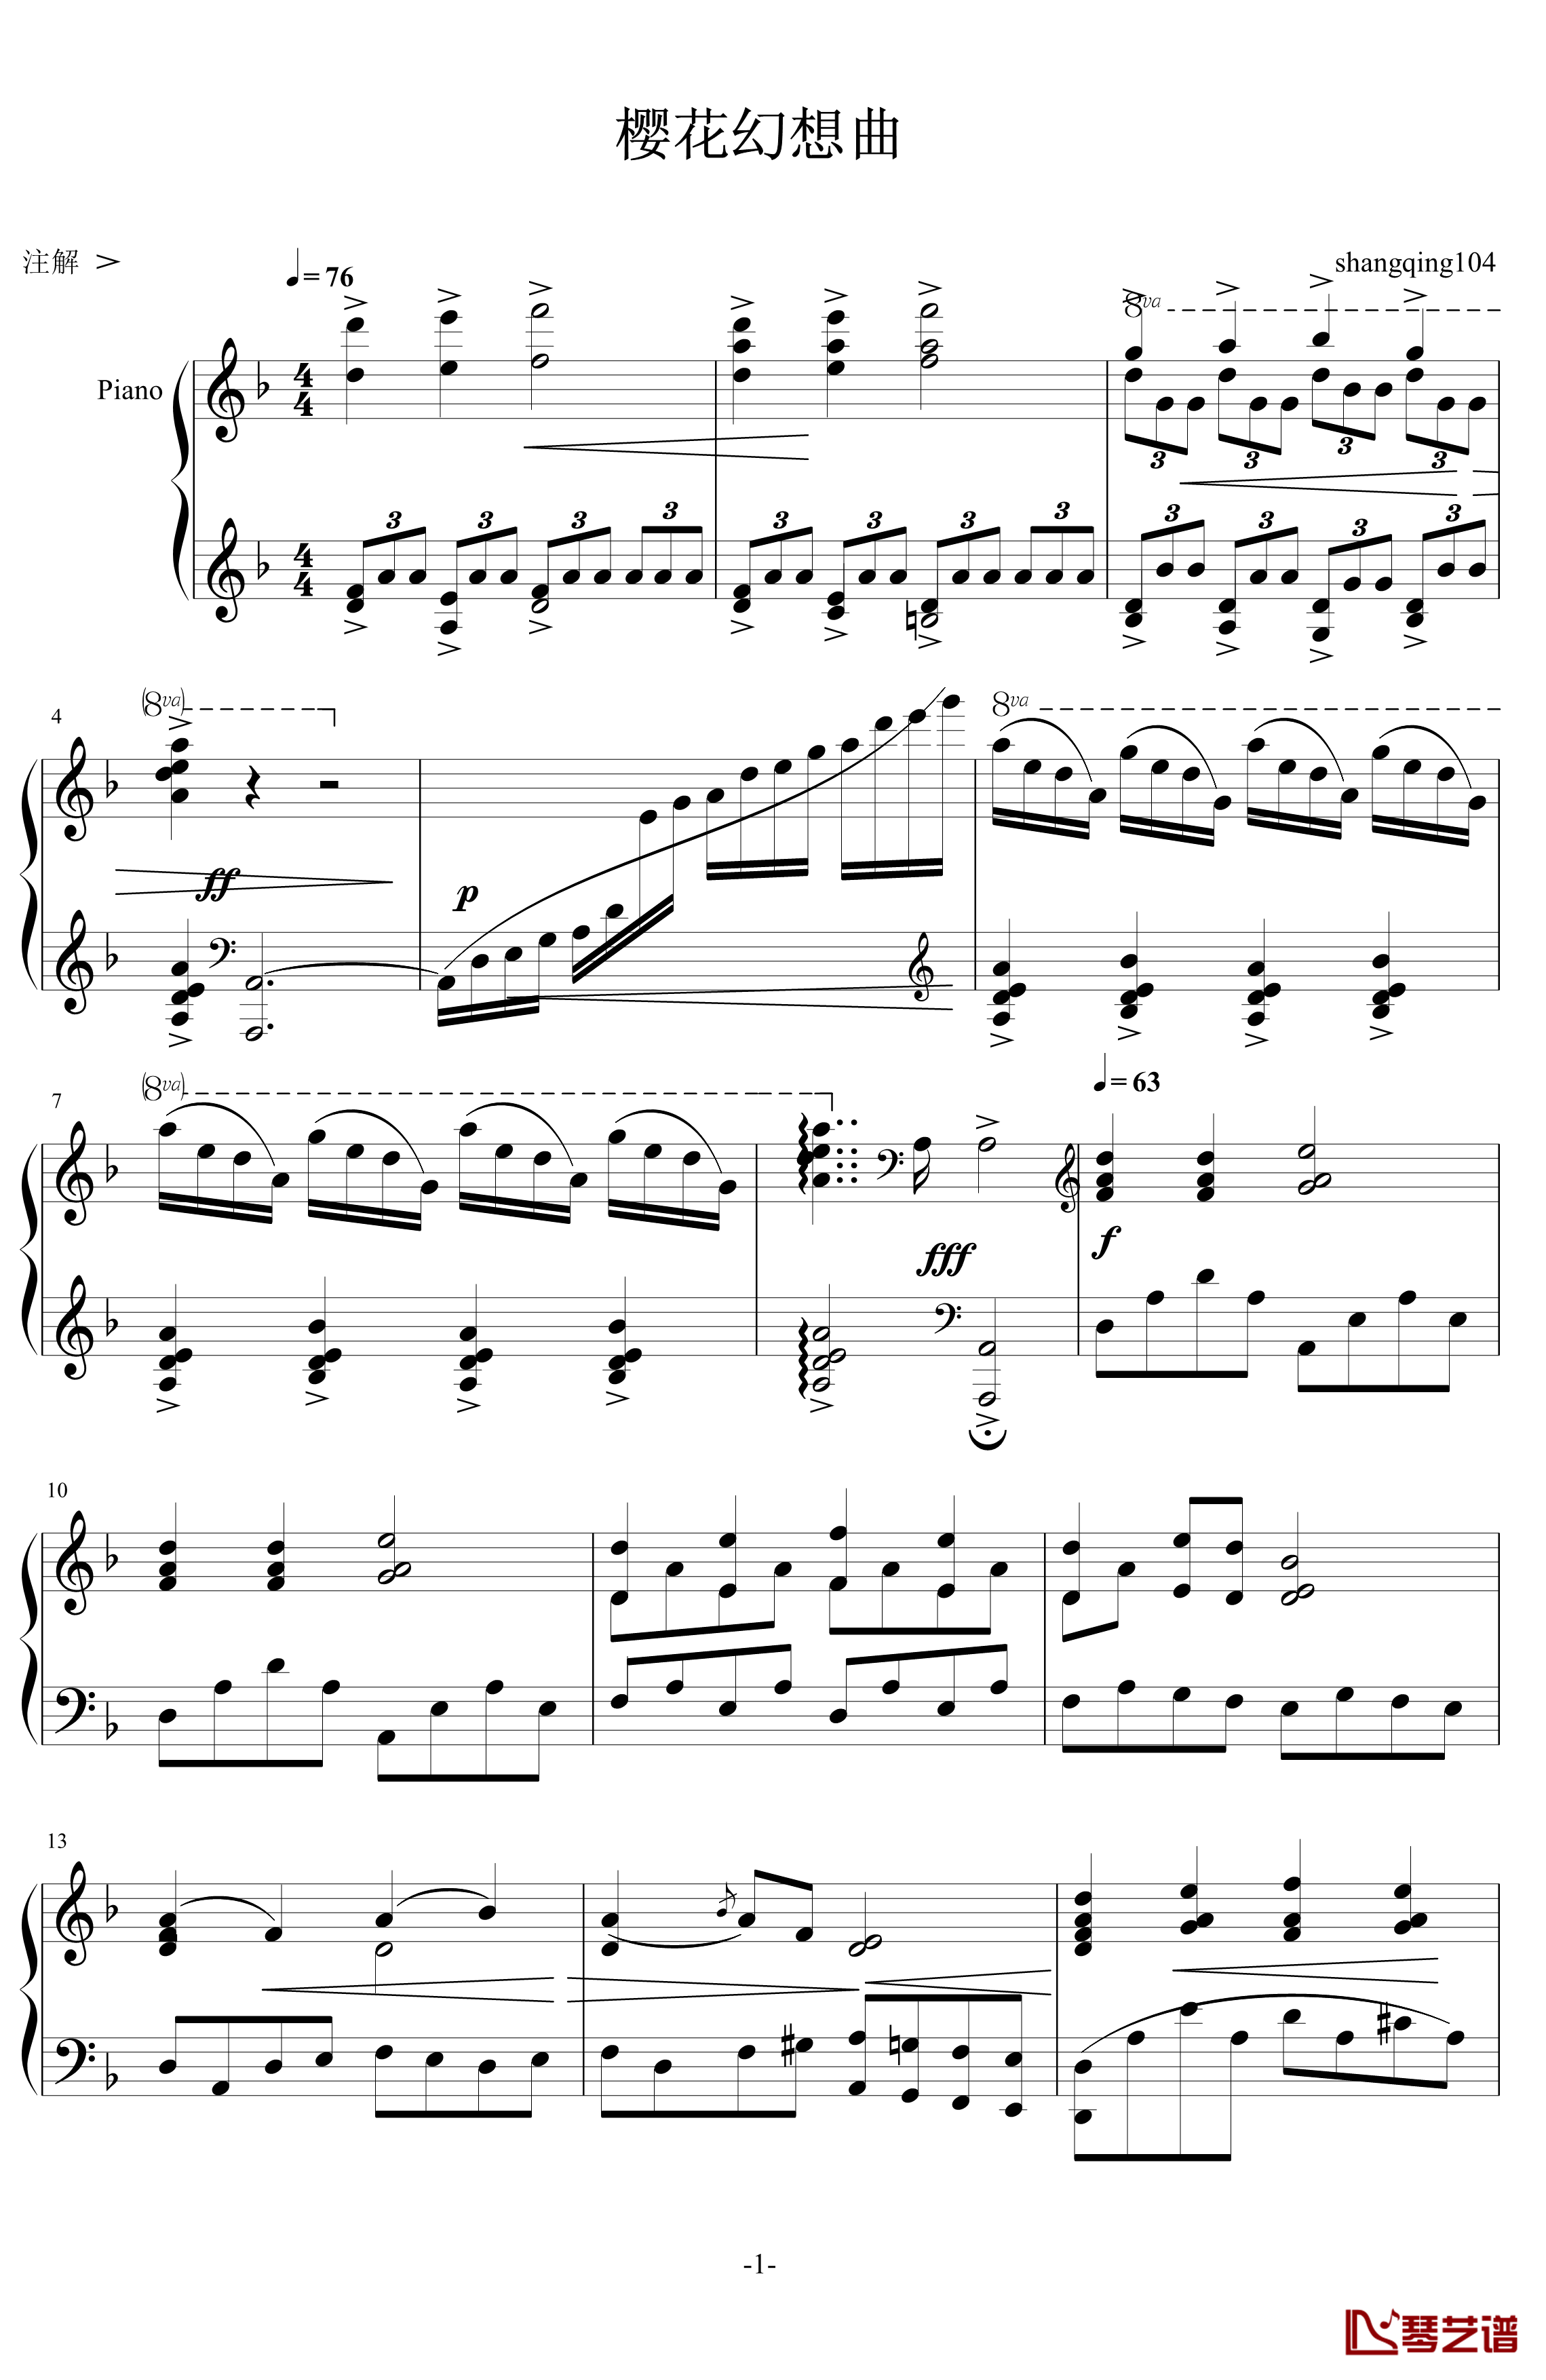 樱花幻想曲钢琴谱-世界名曲1